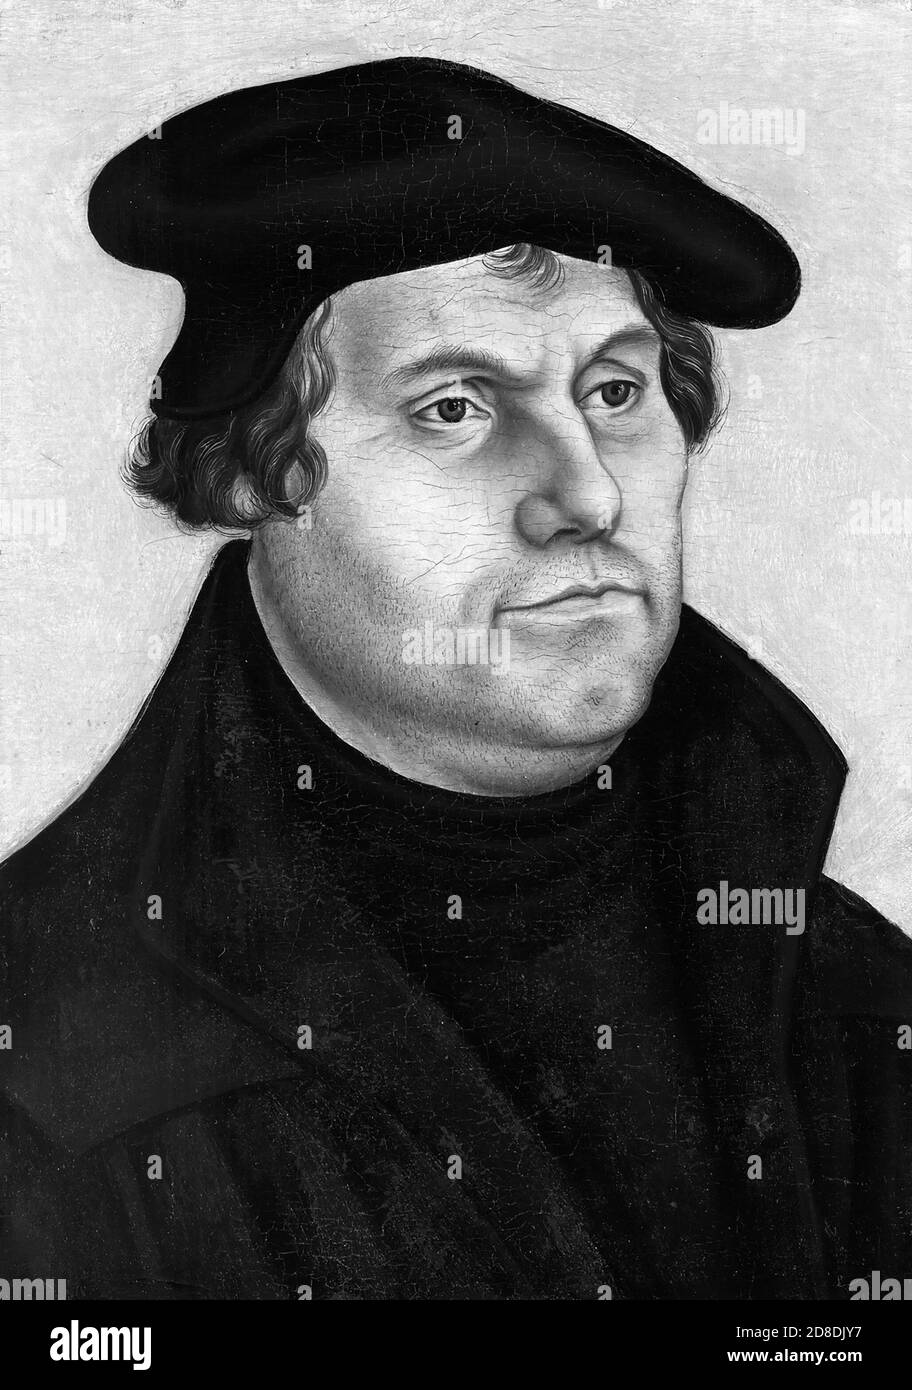 Martin Lutero (1483-1546) è stato un professore, teologo e figura chiave tedesco nella riforma protestante, nonché un traduttore della Bibbia nel volgare tedesco. Foto Stock